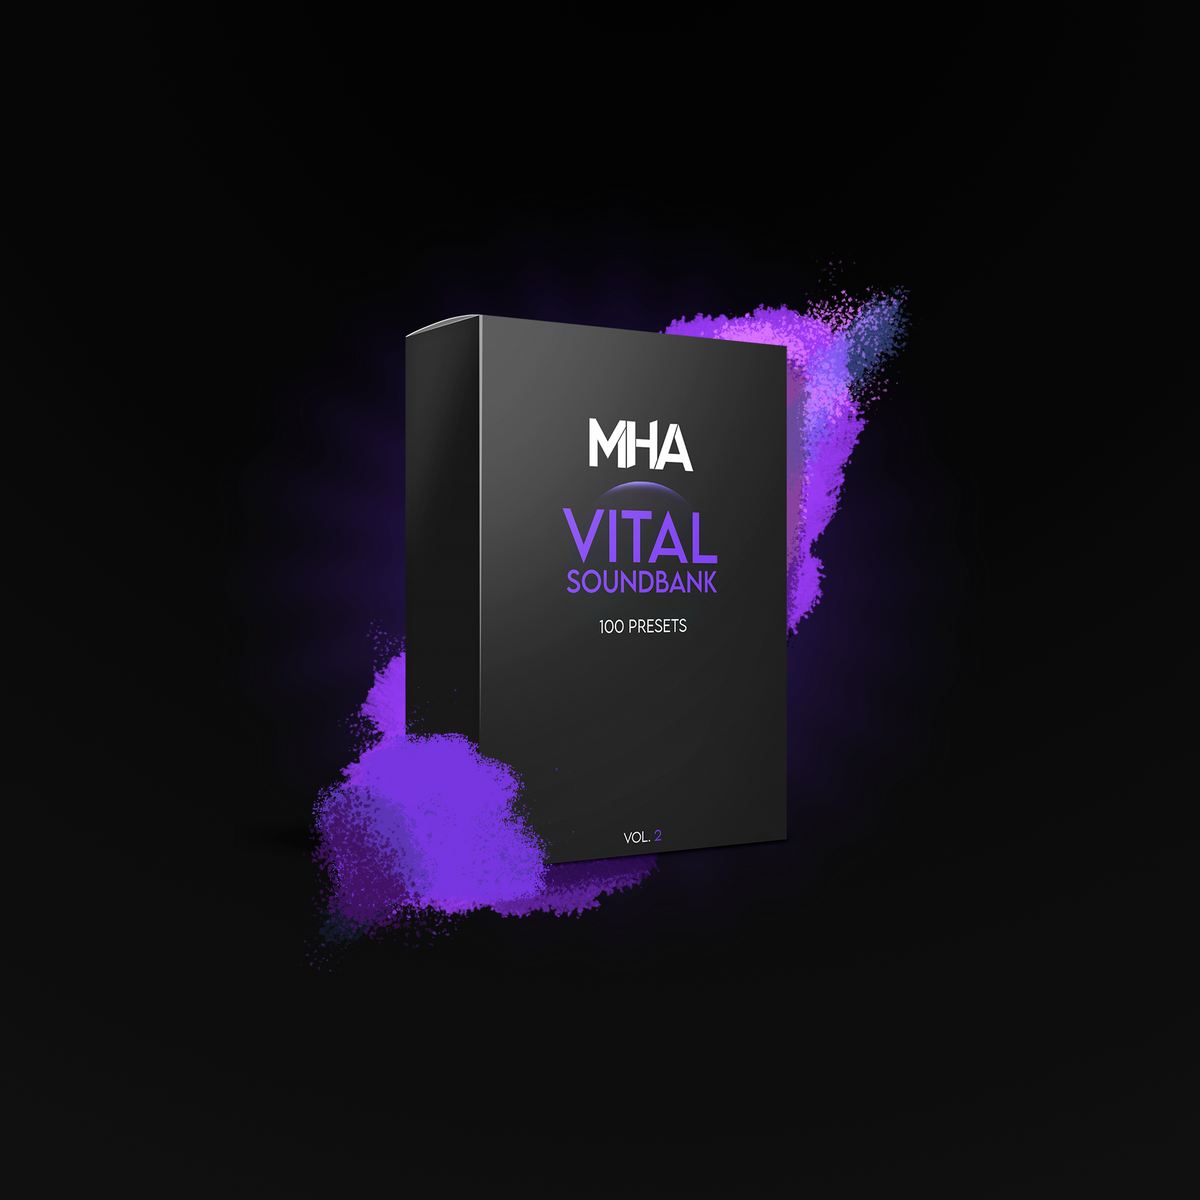 MHA Vital Soundbank Vol. 2